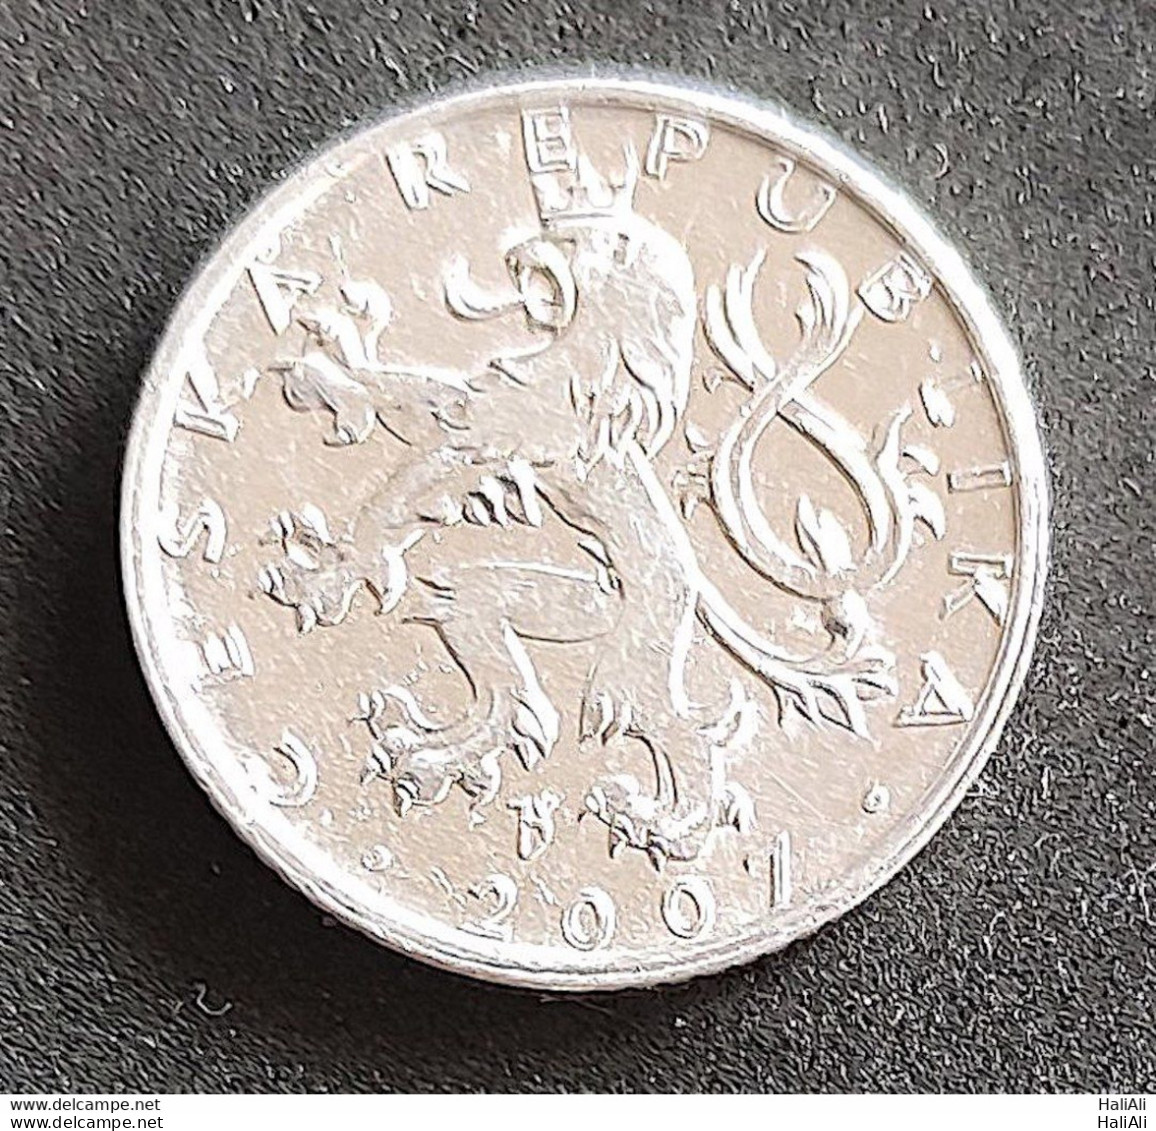 Coin Czech Repubilc 2007 50 Korun 1 - Tchéquie